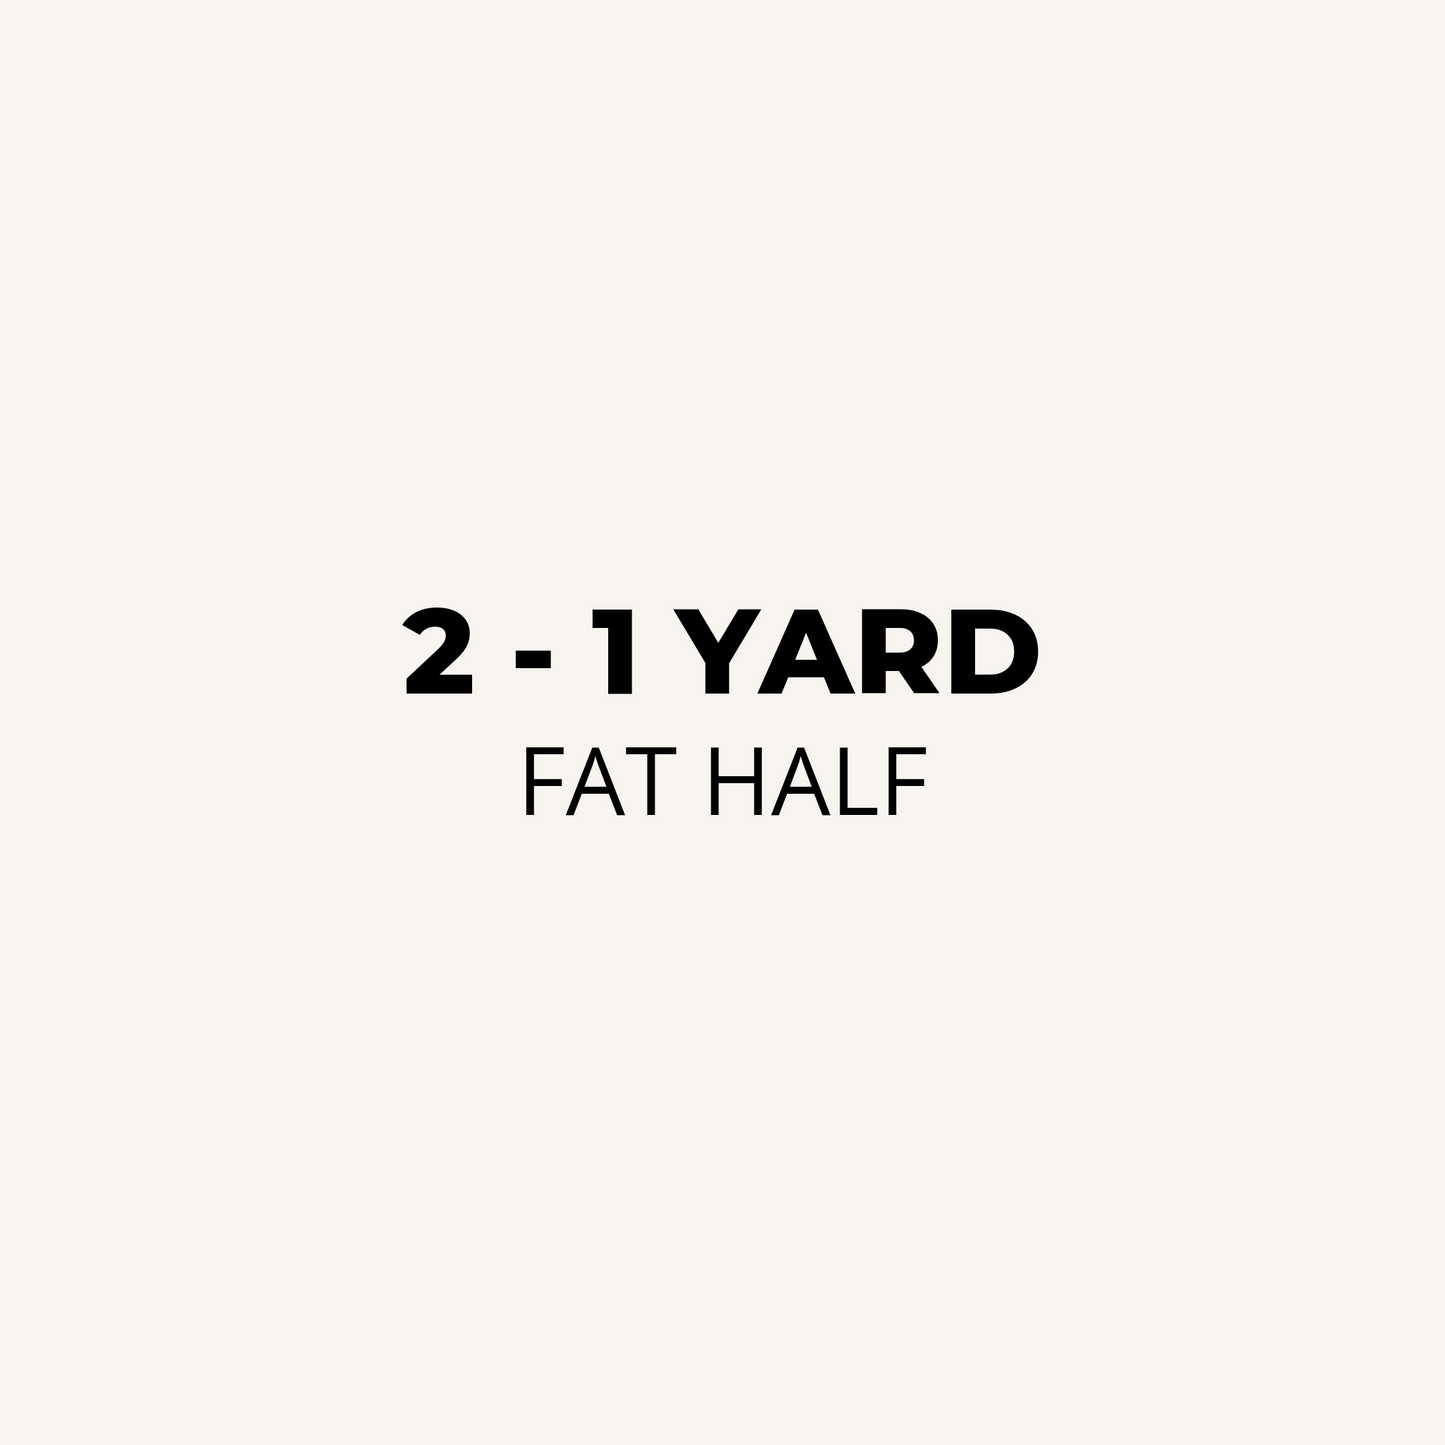 Fat Half, 2 - 1 Yard